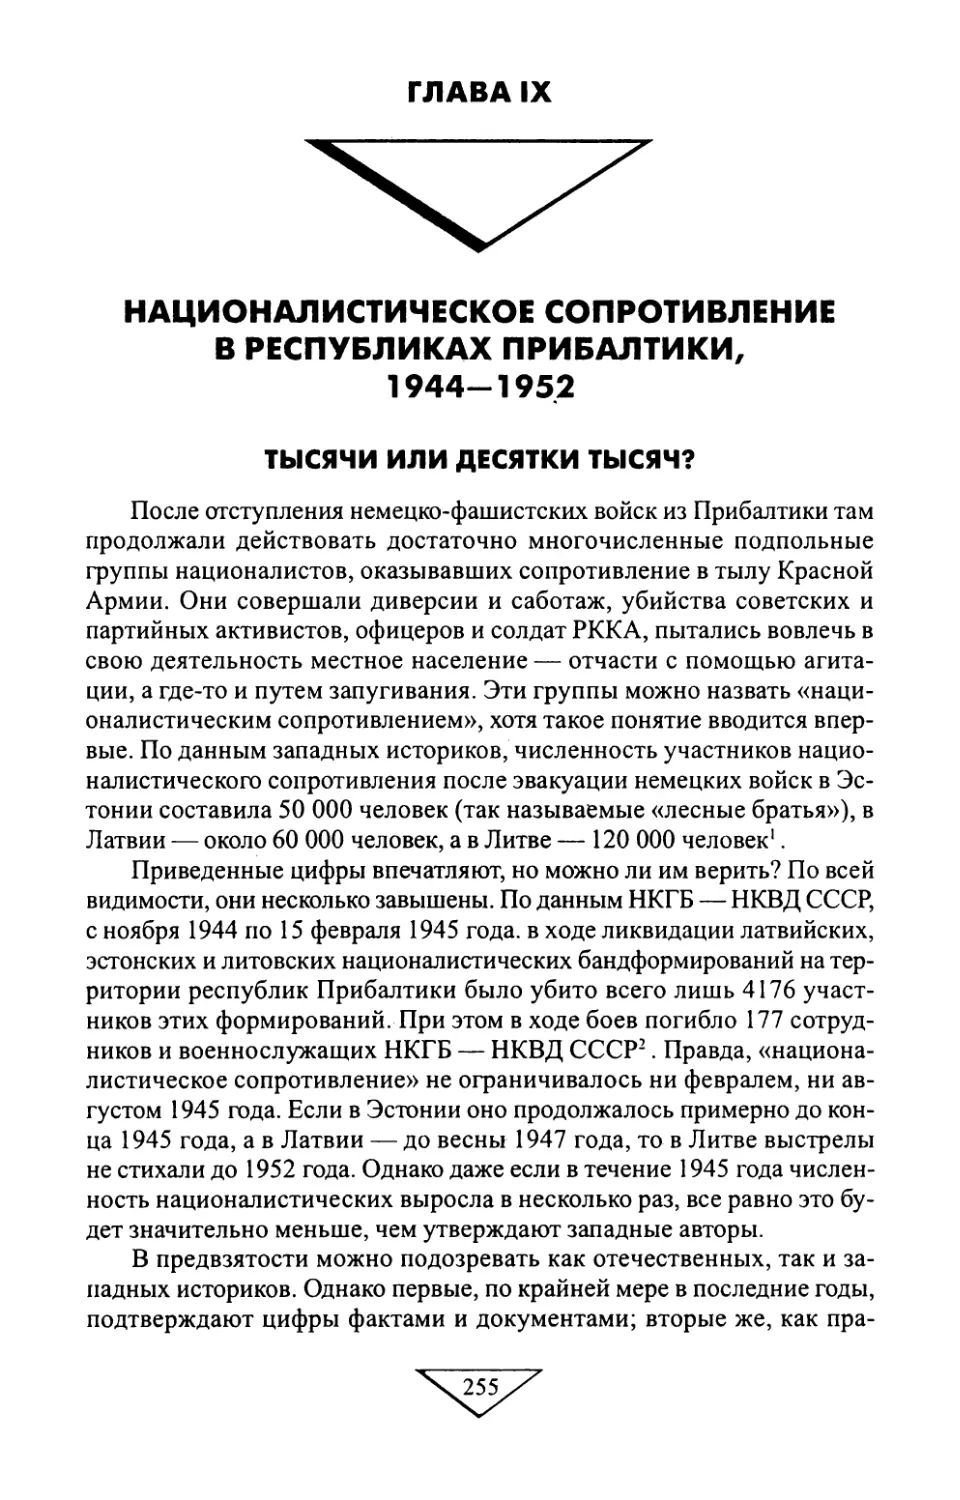 ГЛАВА IX. НАЦИОНАЛИСТИЧЕСКОЕ СОПРОТИВЛЕНИЕ В РЕСПУБЛИКАХ ПРИБАЛТИКИ, 1944—1952